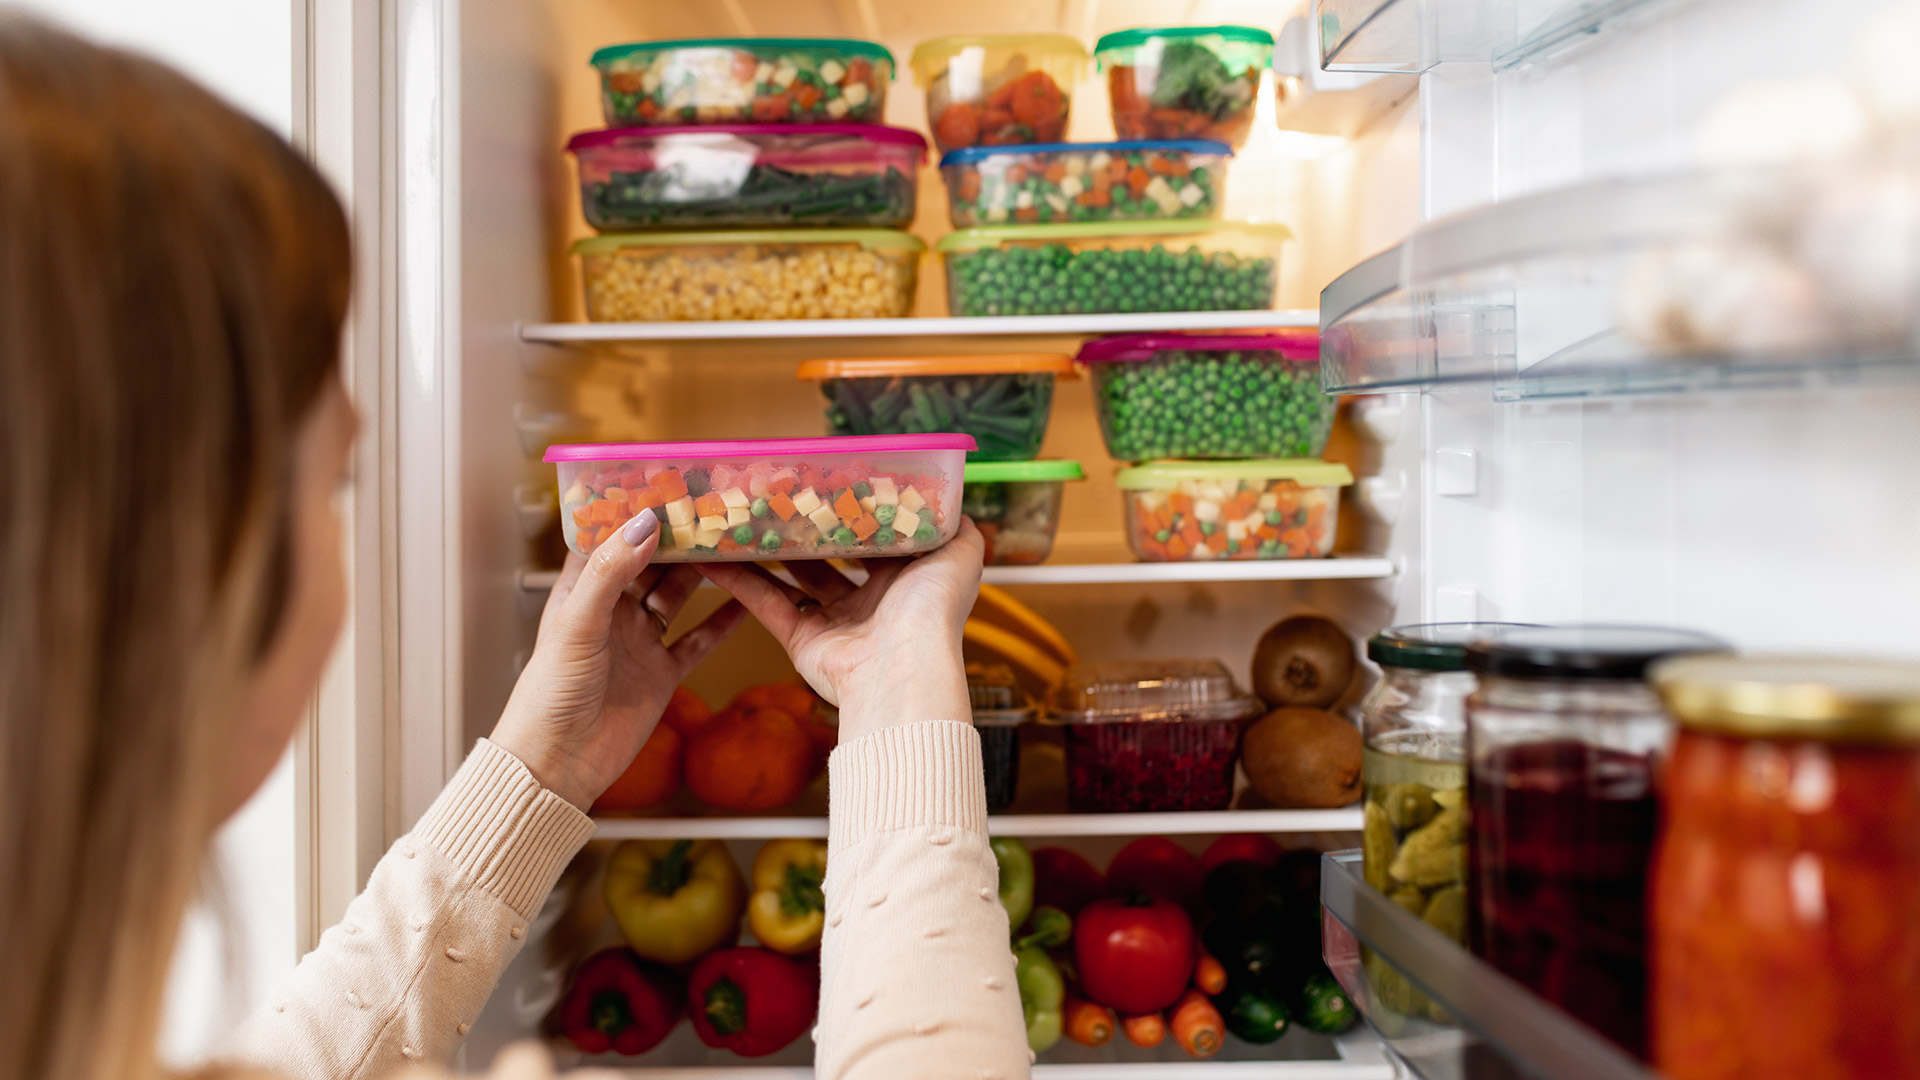 Los alimentos se deben descongelar en la heladera o refrigerador y no a temperatura ambiente para evitar la proliferación de agentes patógenos (Getty)